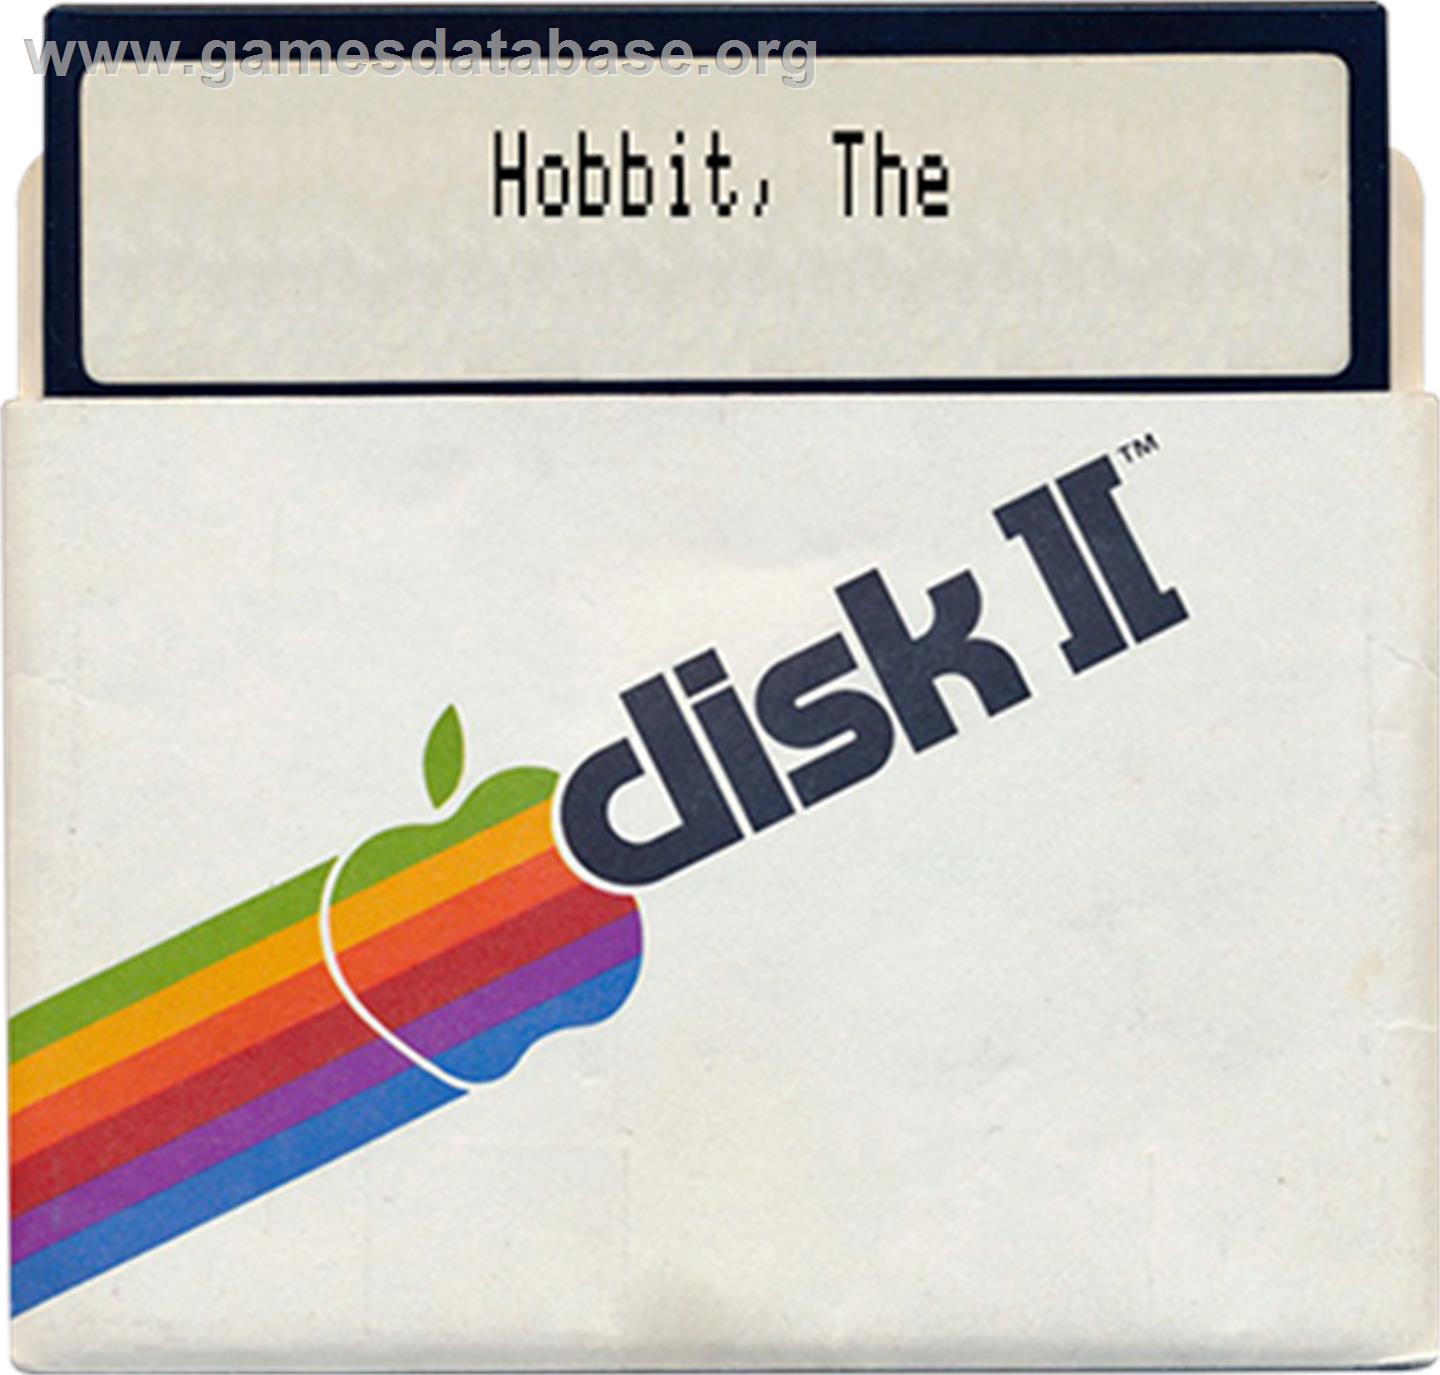 Hobbit - Apple II - Artwork - Disc